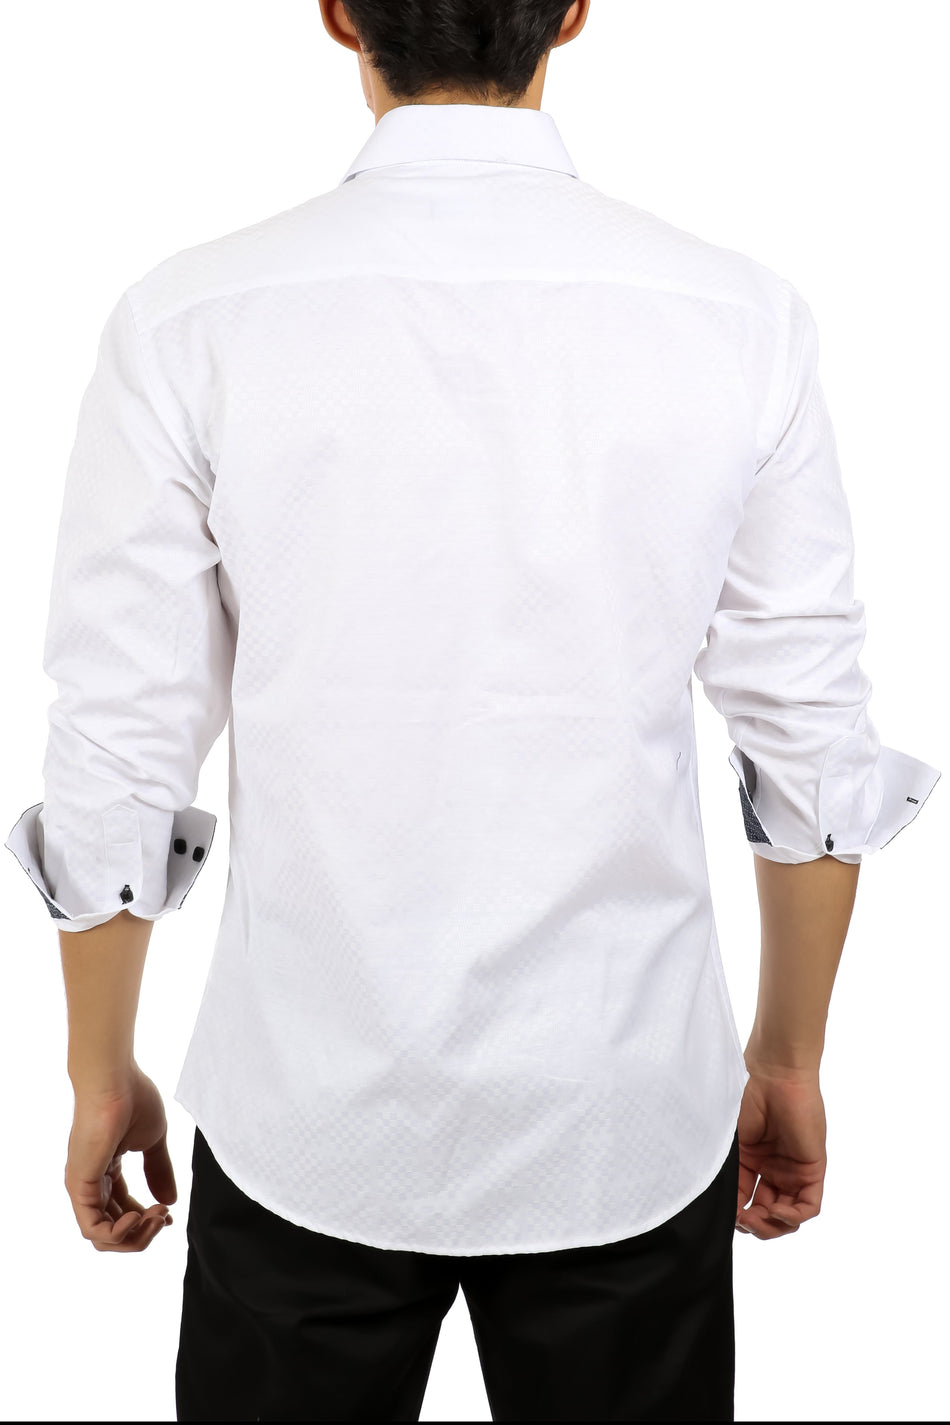 202432 - Men's White Button Up Long Sleeve Dress Shirt